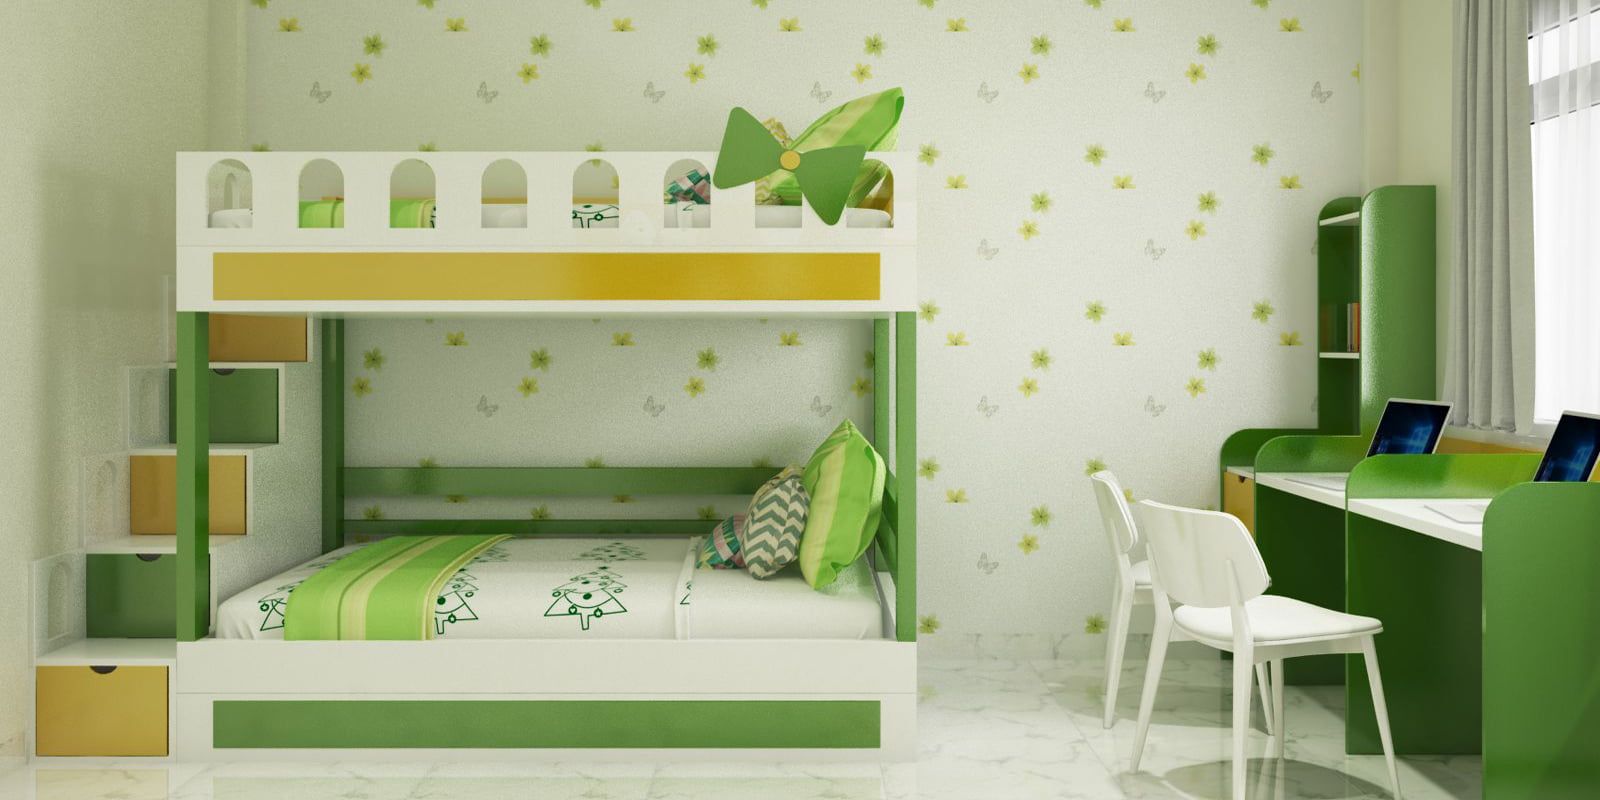 Xanh là cũng là một tông màu yêu thích của những bậc phụ huynh khi thiết kế phòng ngủ cho các bé yêu nhà mình